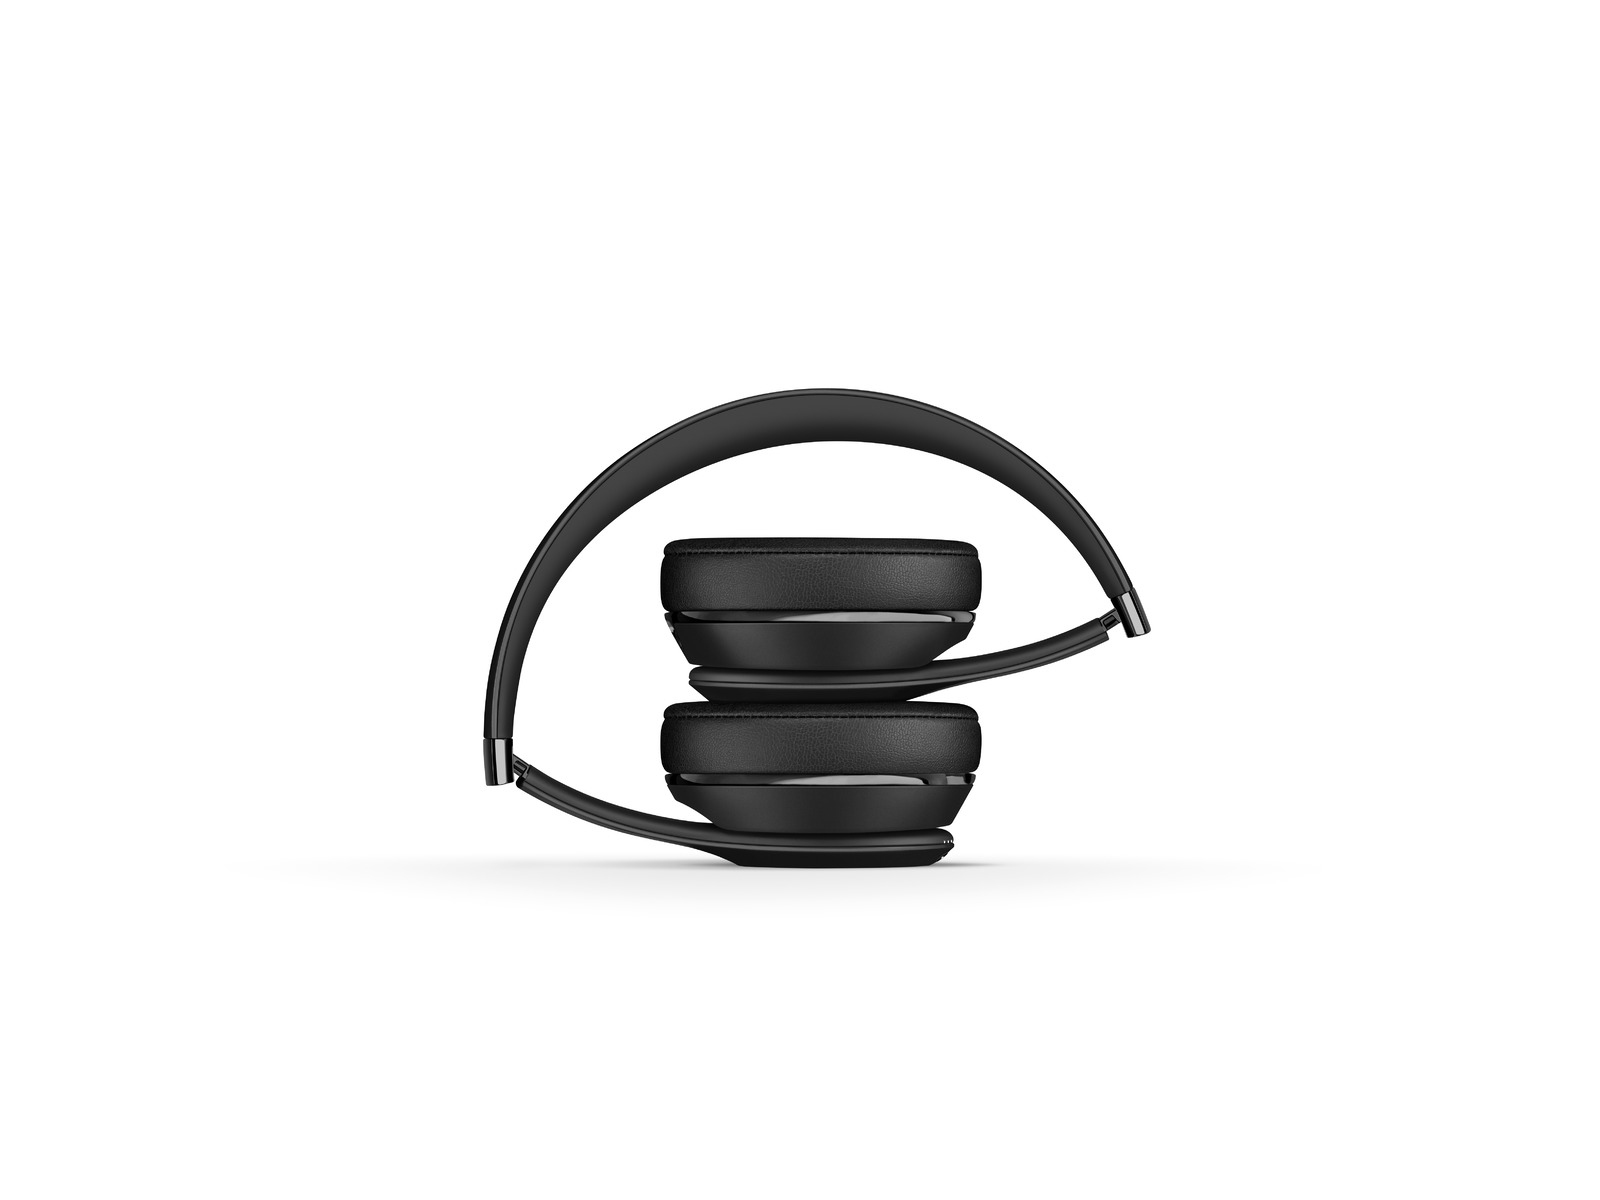 BEATS Solo 3 Wireless, Schwarz Bluetooth On-ear Kopfhörer